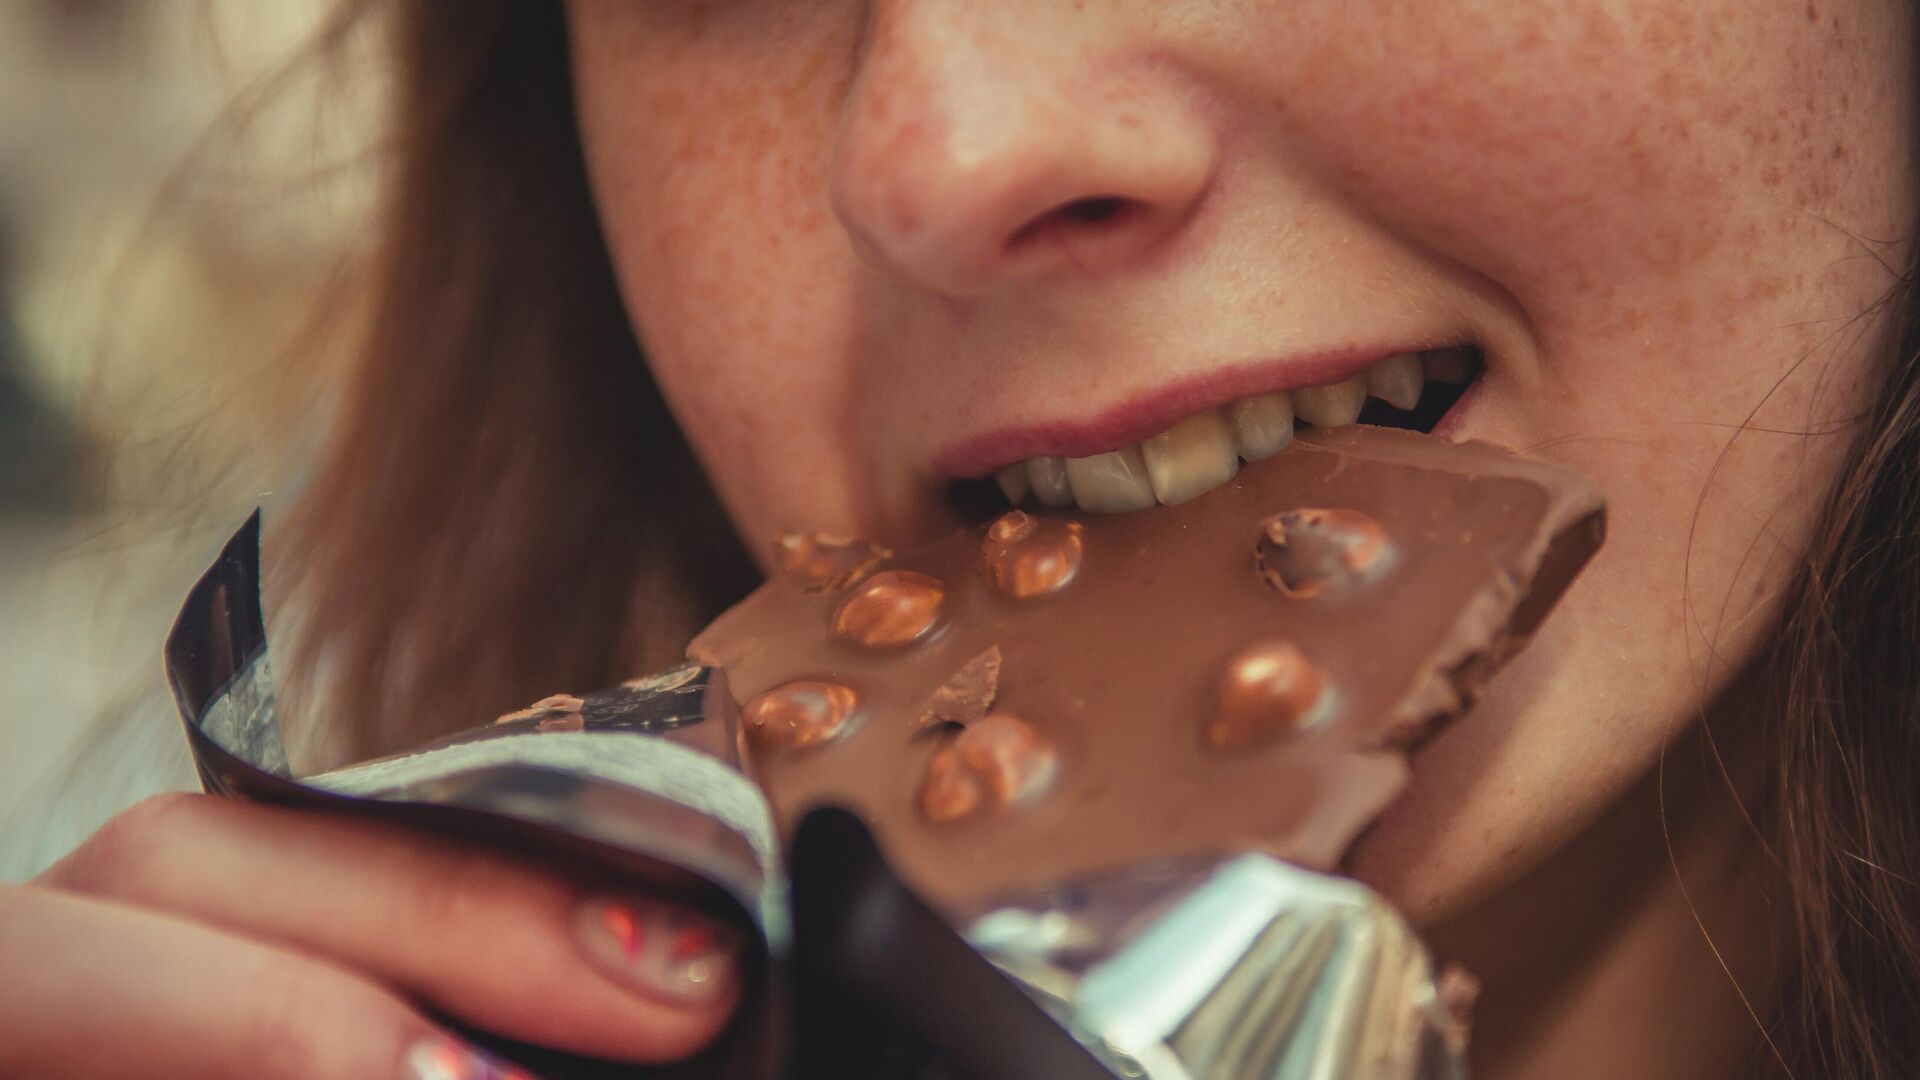 Una persona come chocolate - Sputnik Mundo, 1920, 22.08.2021